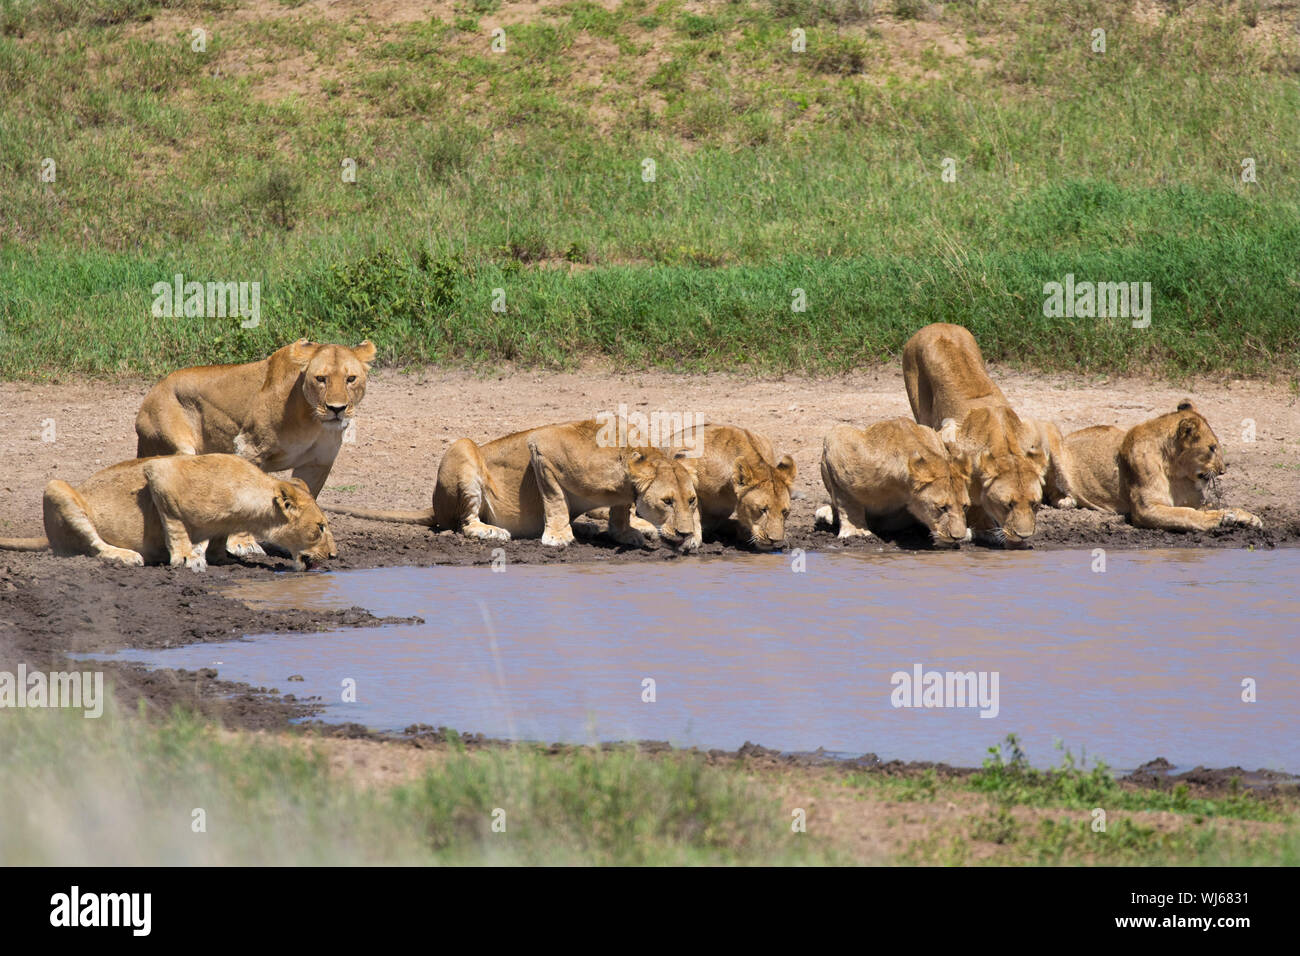 León Africano (Panthera leo) orgullo beber al waterhole, Parque Nacional del Serengeti, Tanzania. Foto de stock